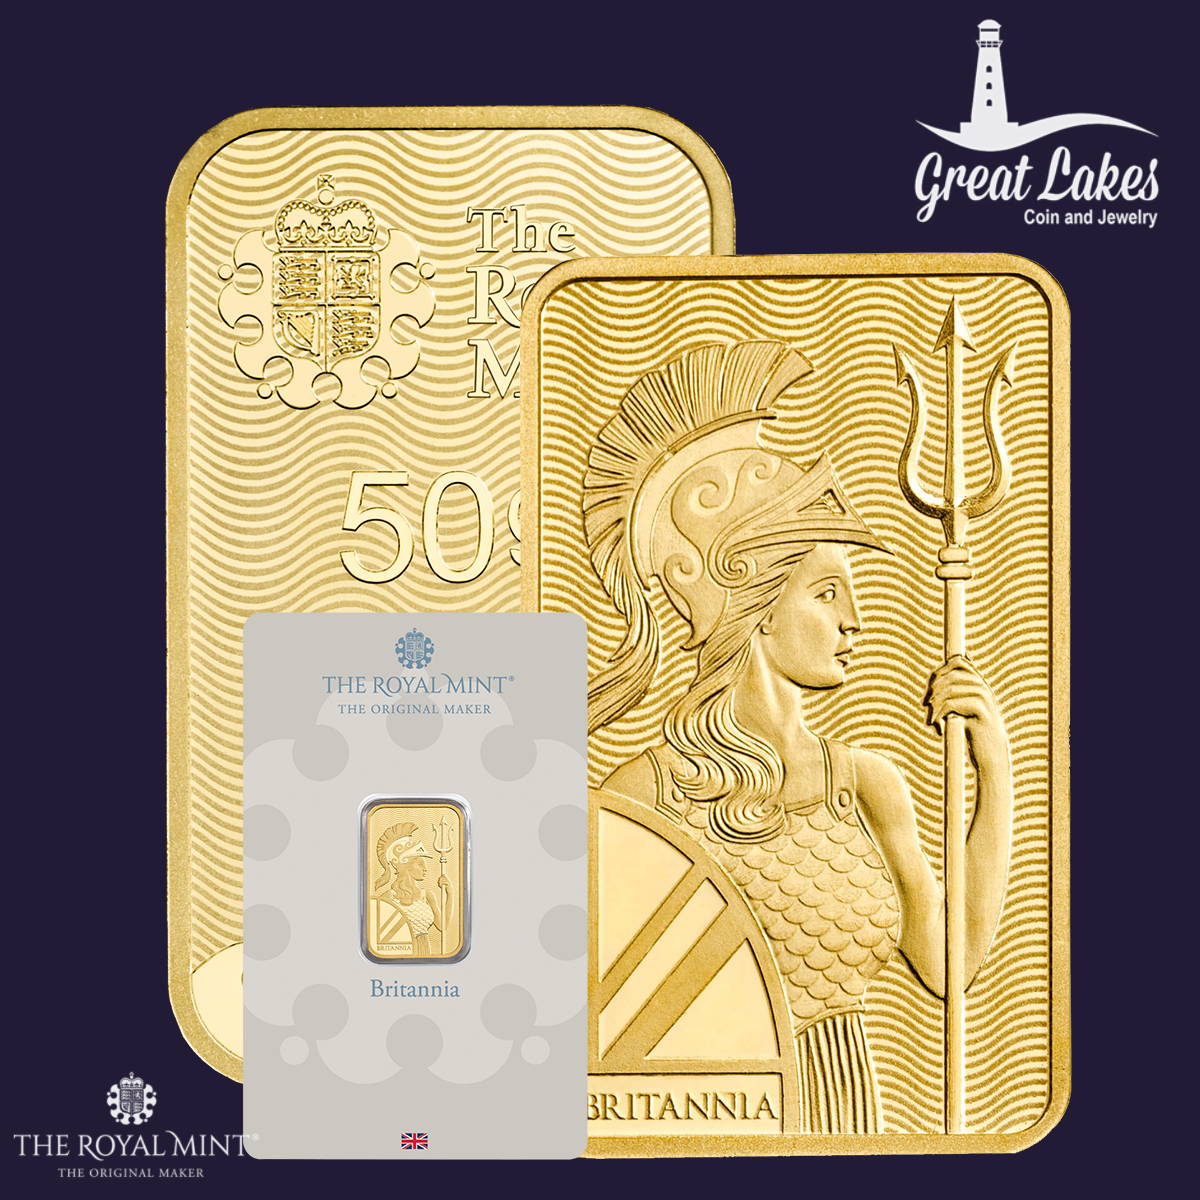 The Royal Mint Britannia Gold Bars